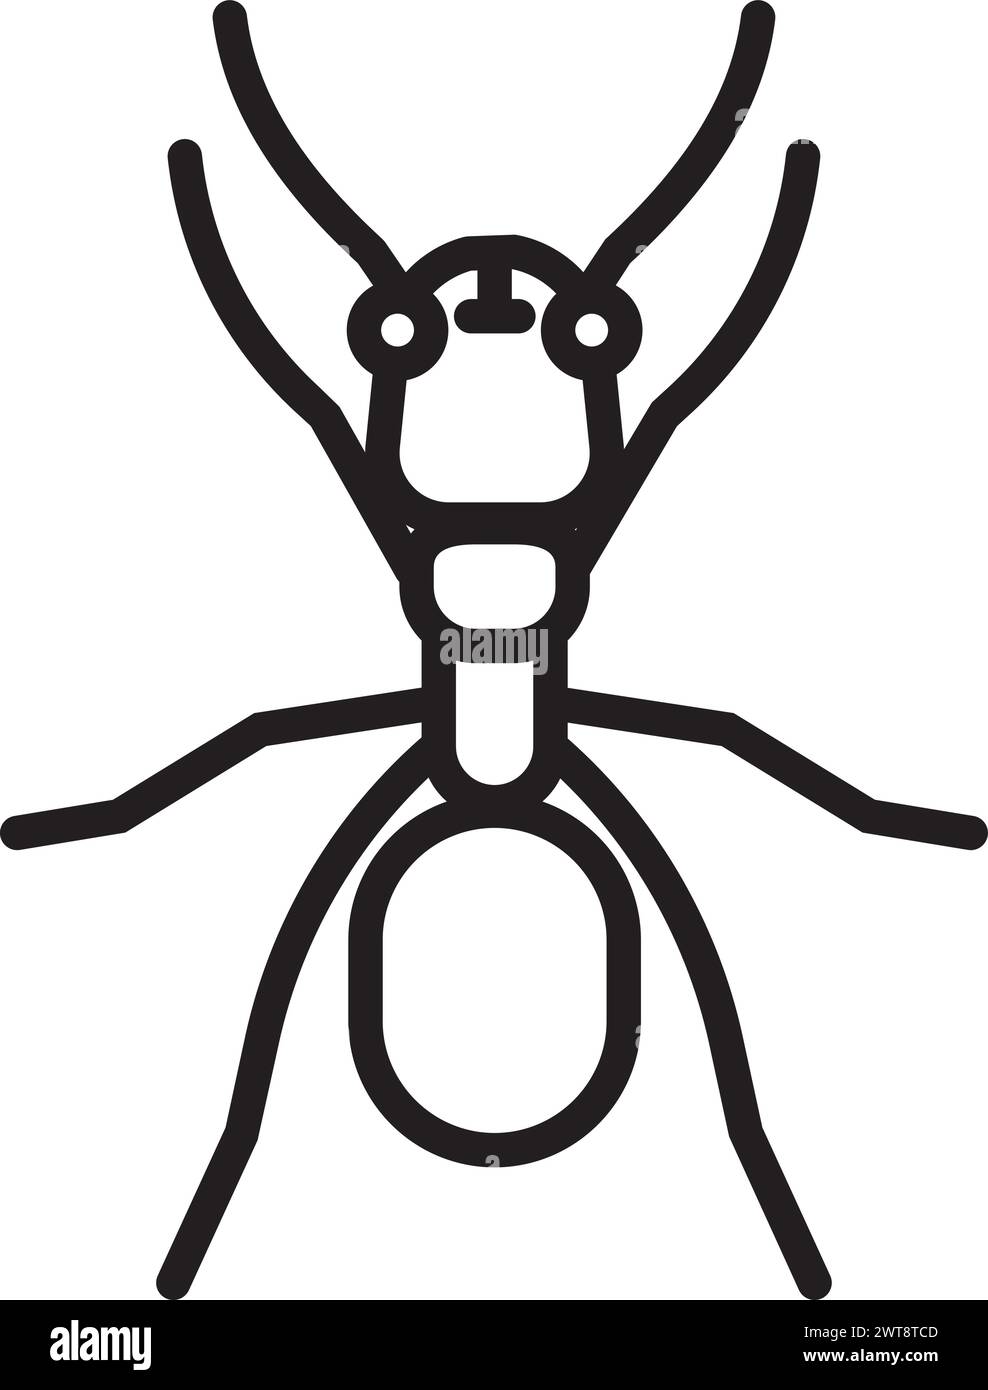 Icona ANT. Simbolo di insetto lineare. Logo entomologico Illustrazione Vettoriale